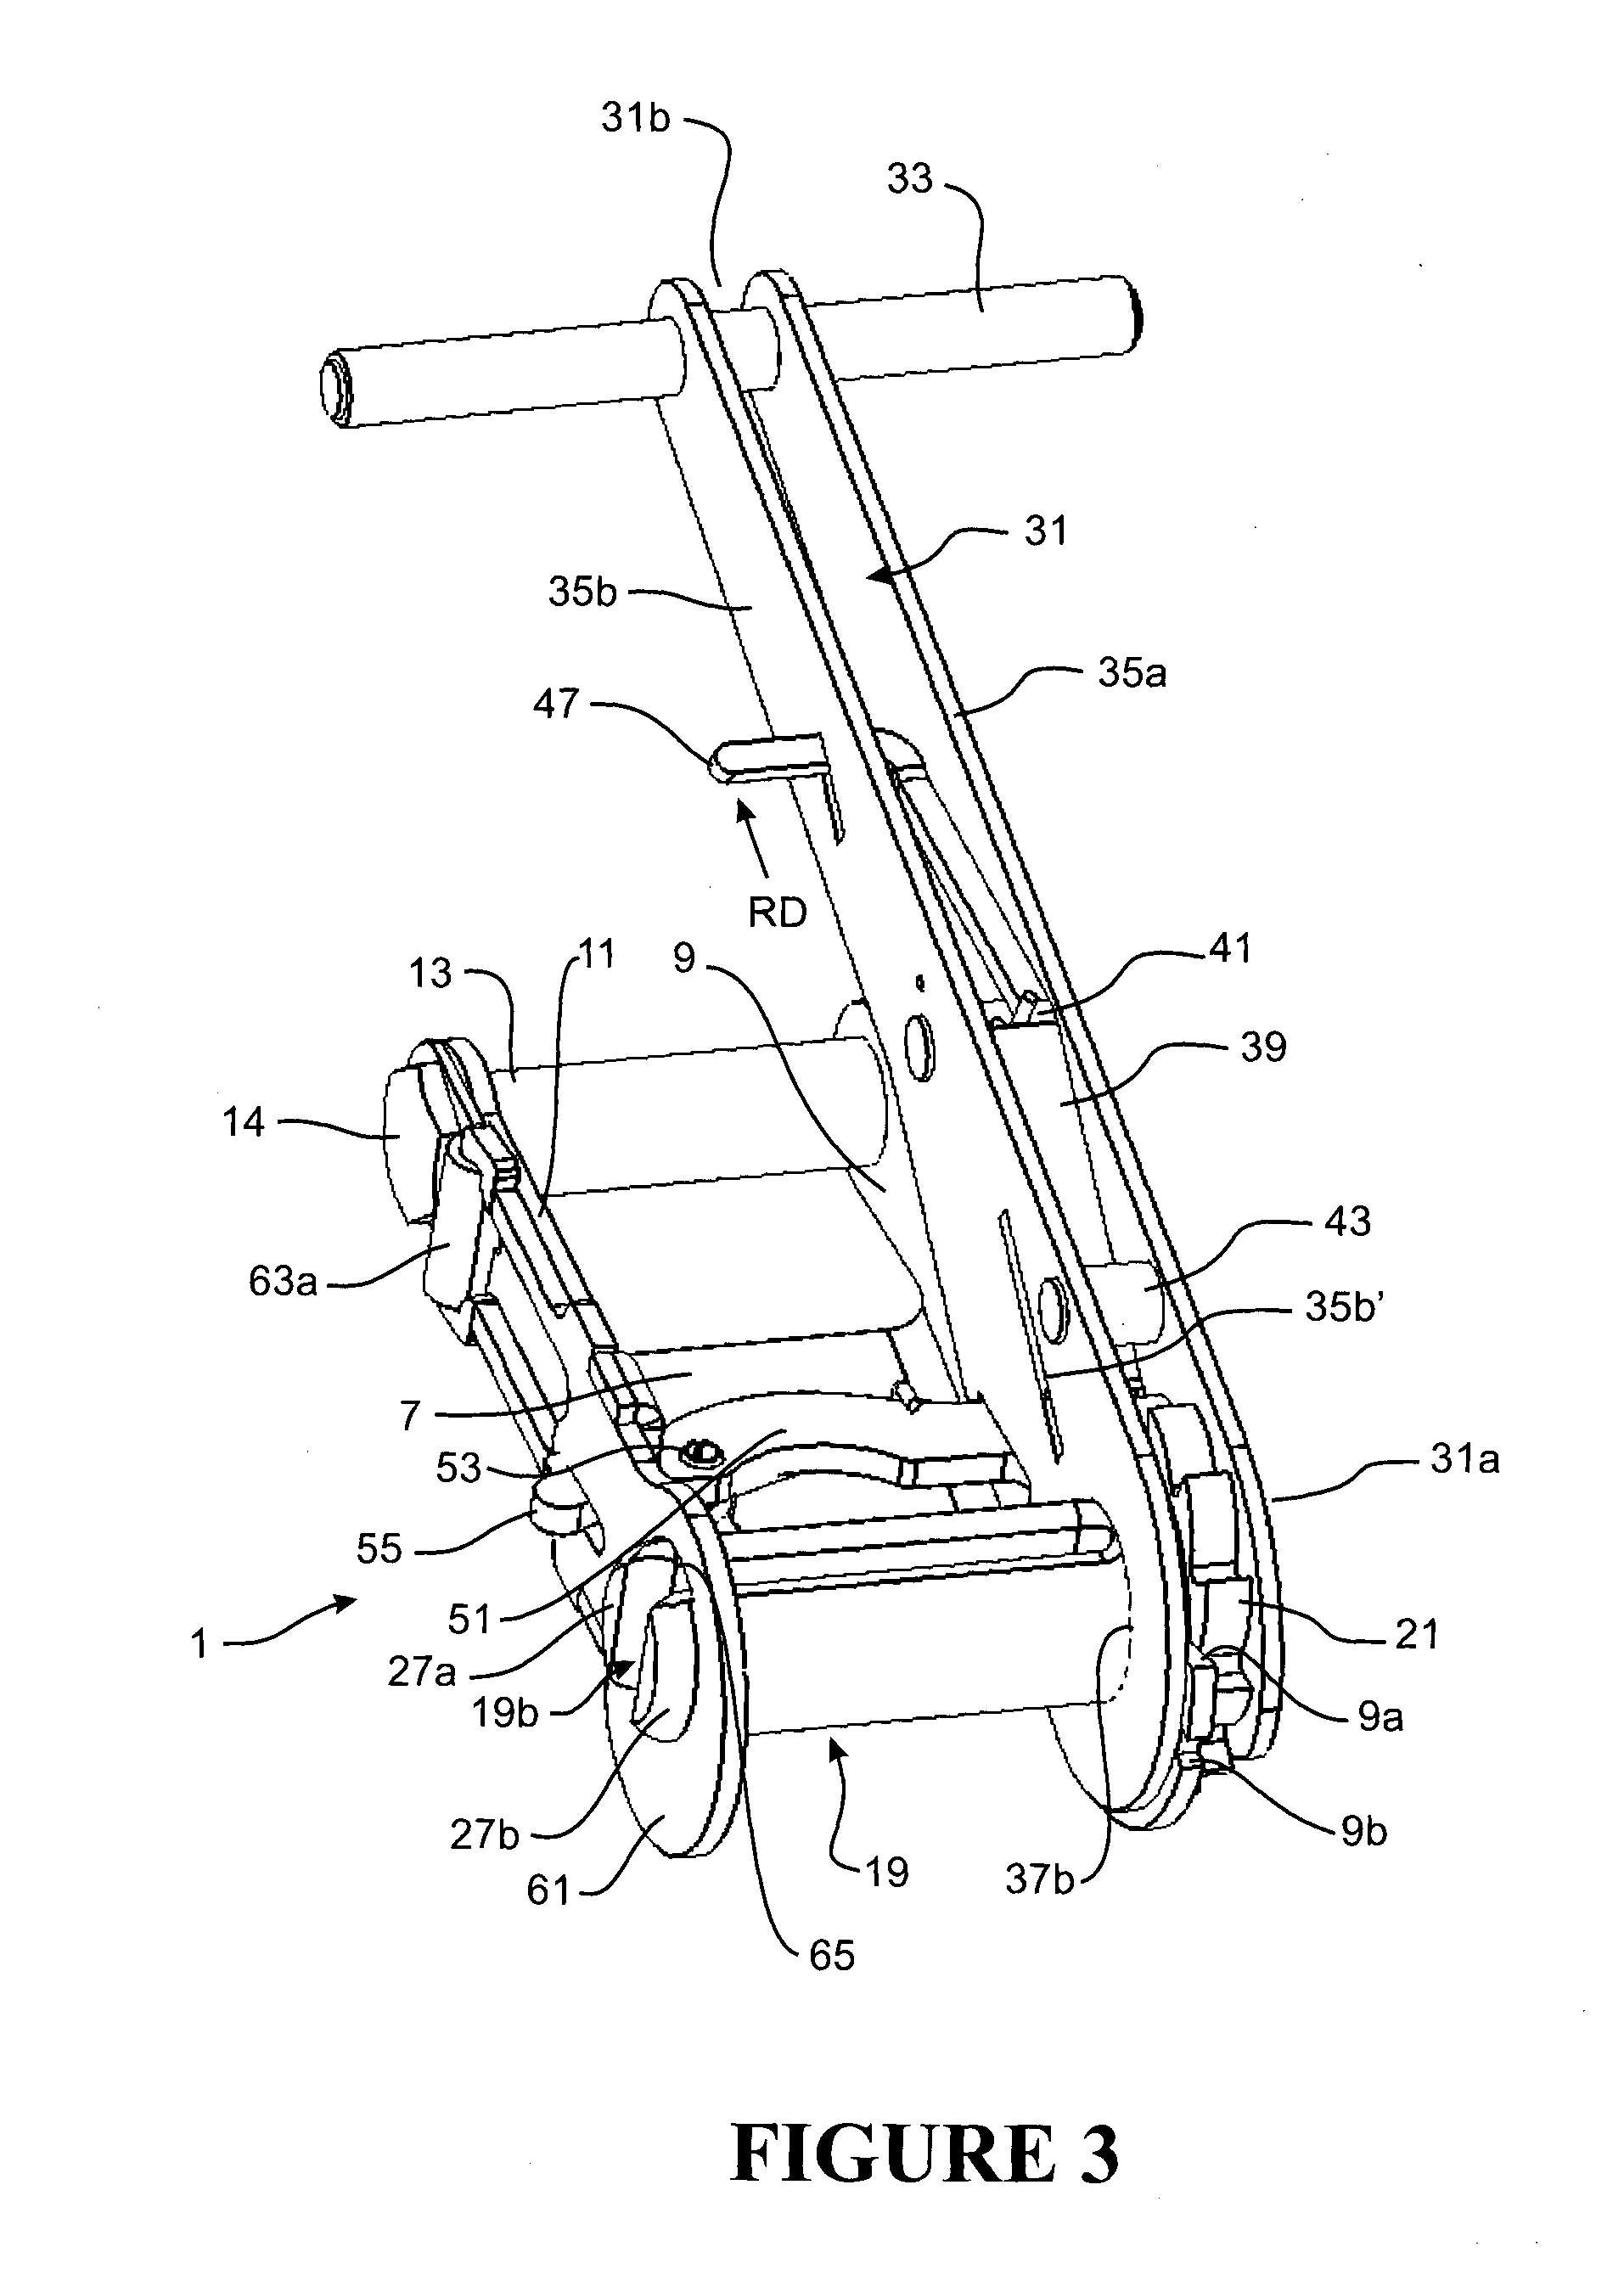 Side-loading ratchet device